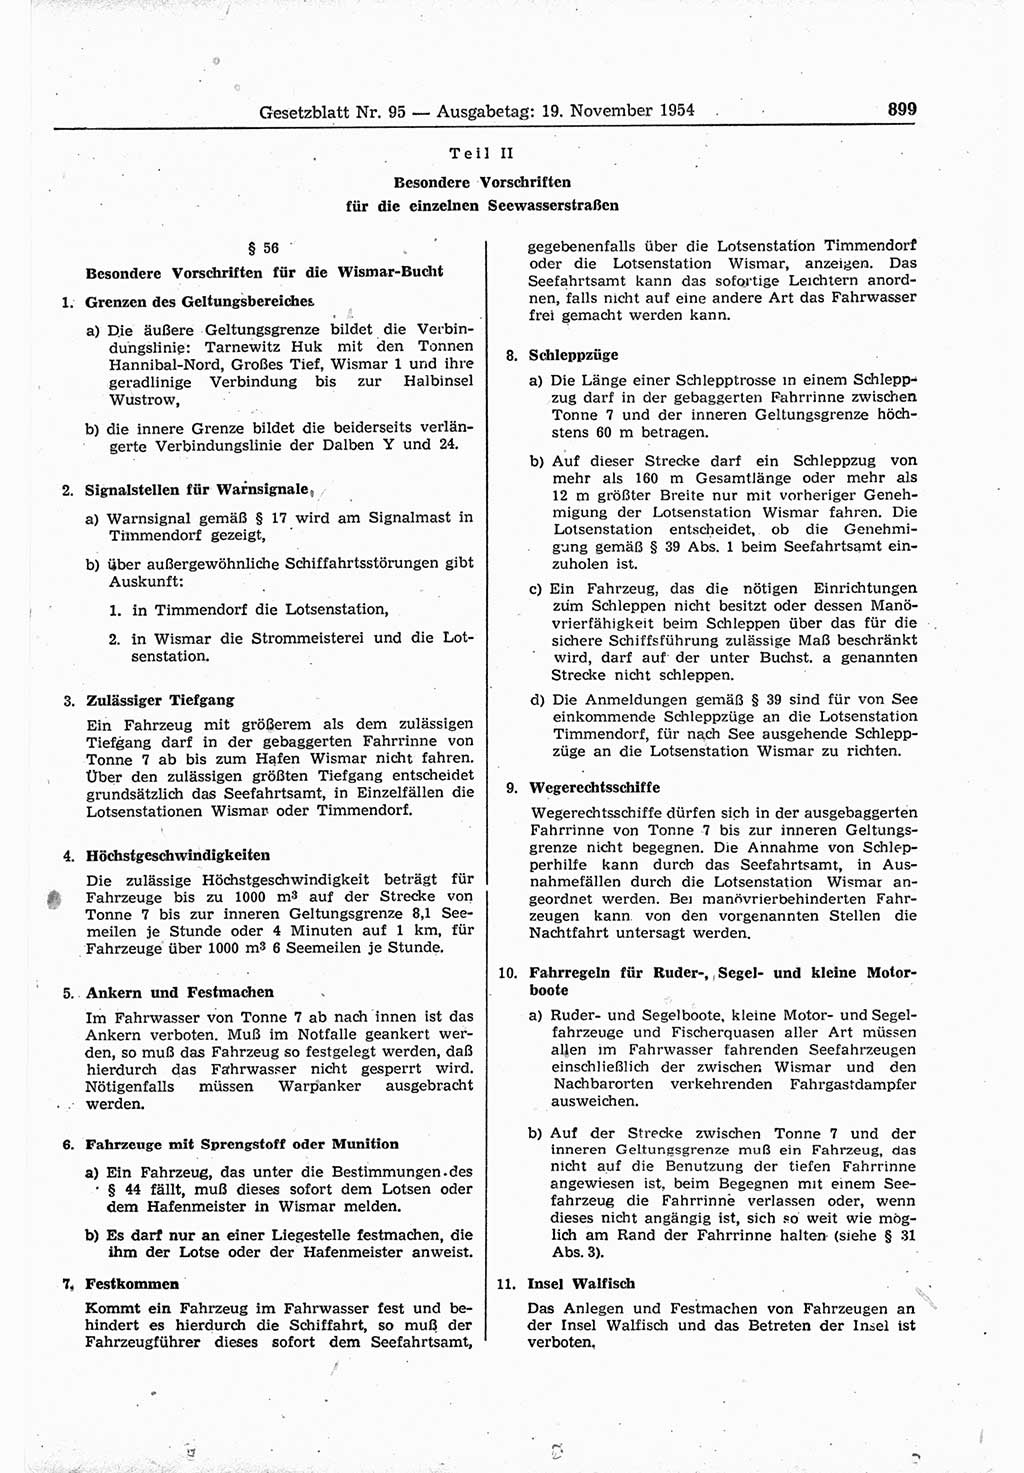 Gesetzblatt (GBl.) der Deutschen Demokratischen Republik (DDR) 1954, Seite 899 (GBl. DDR 1954, S. 899)